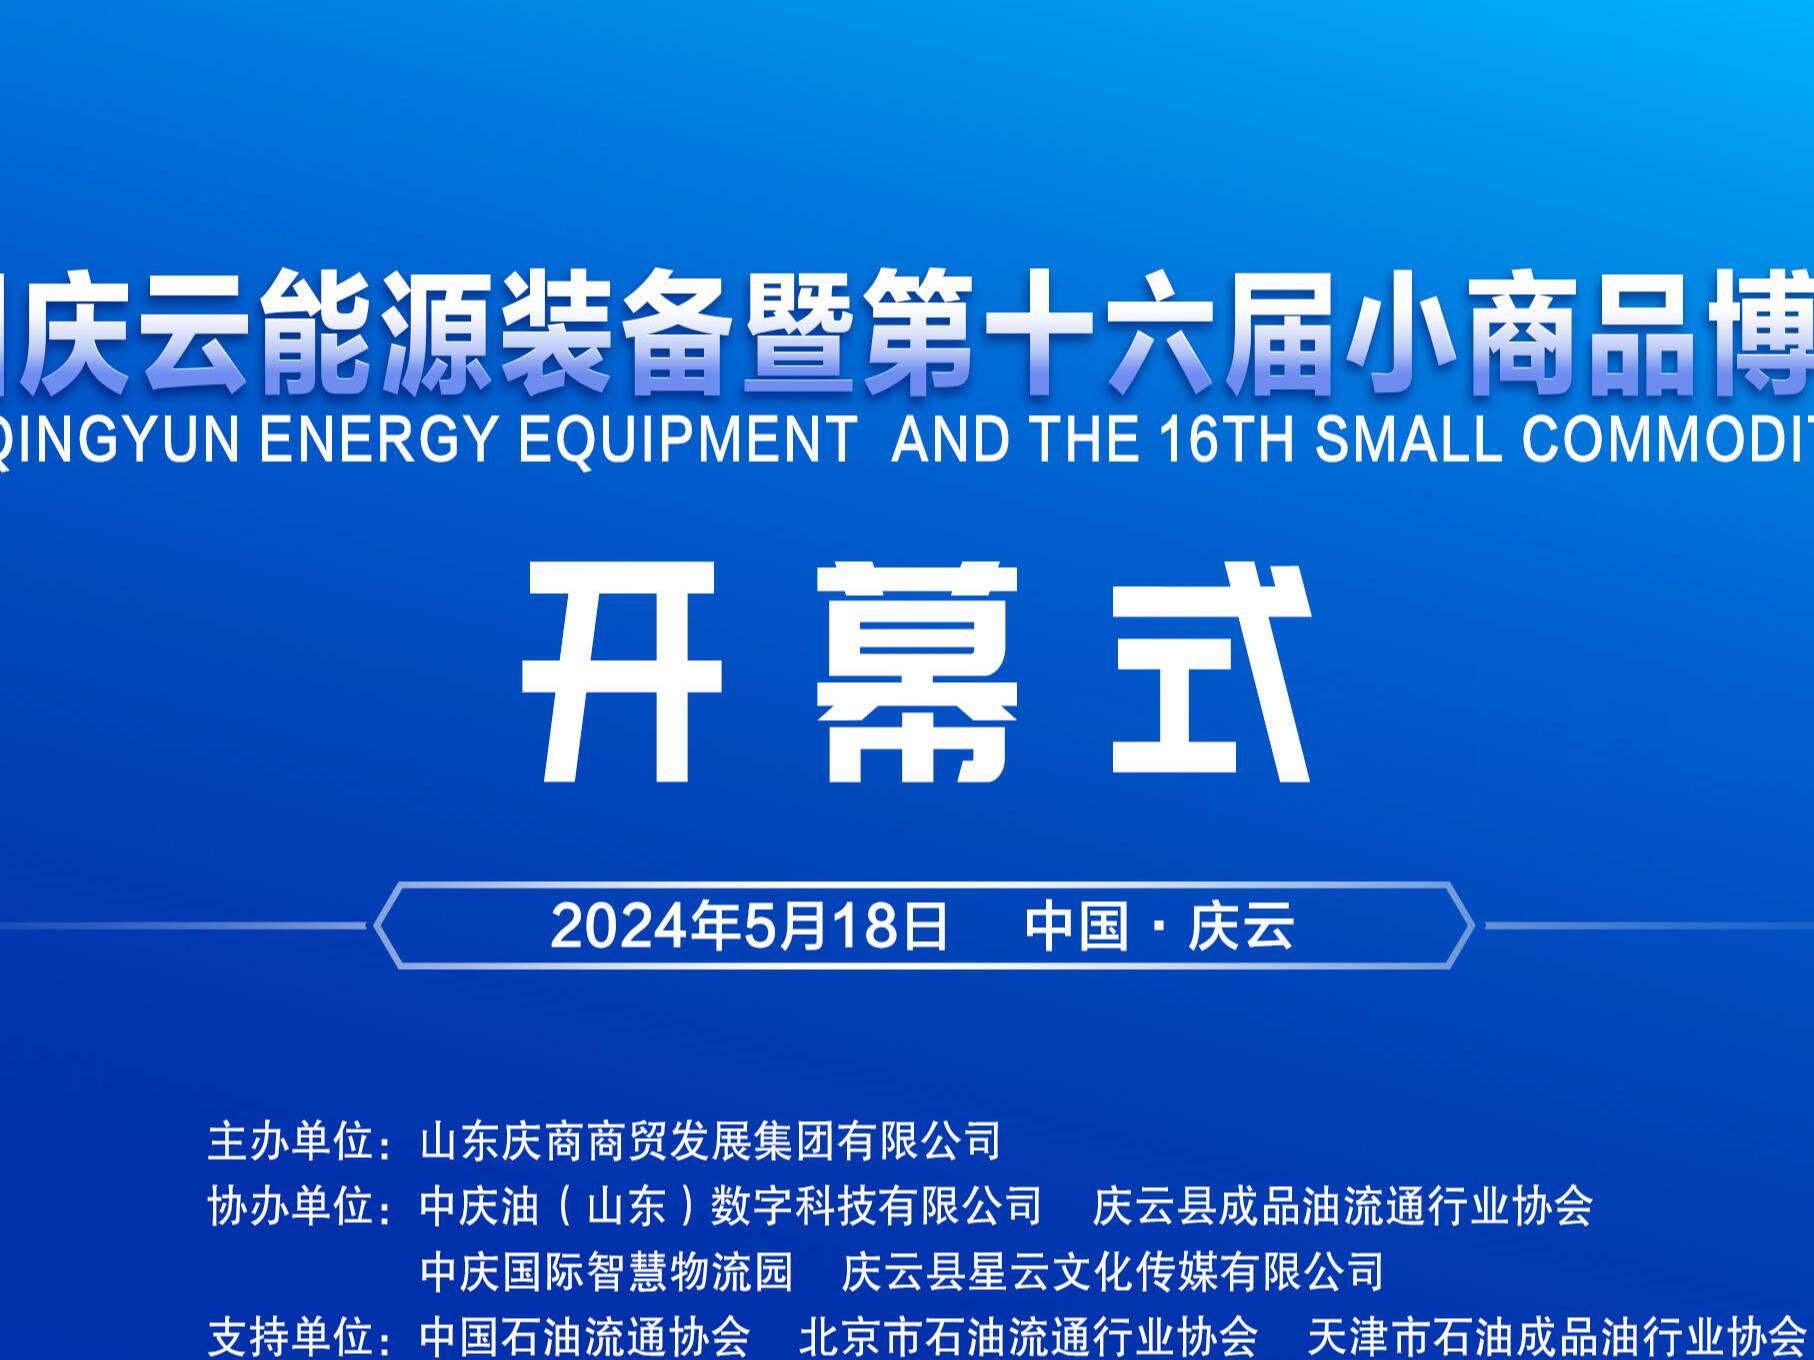 中国庆云能源装备暨第十六届小商品博览会将于5月18日开幕